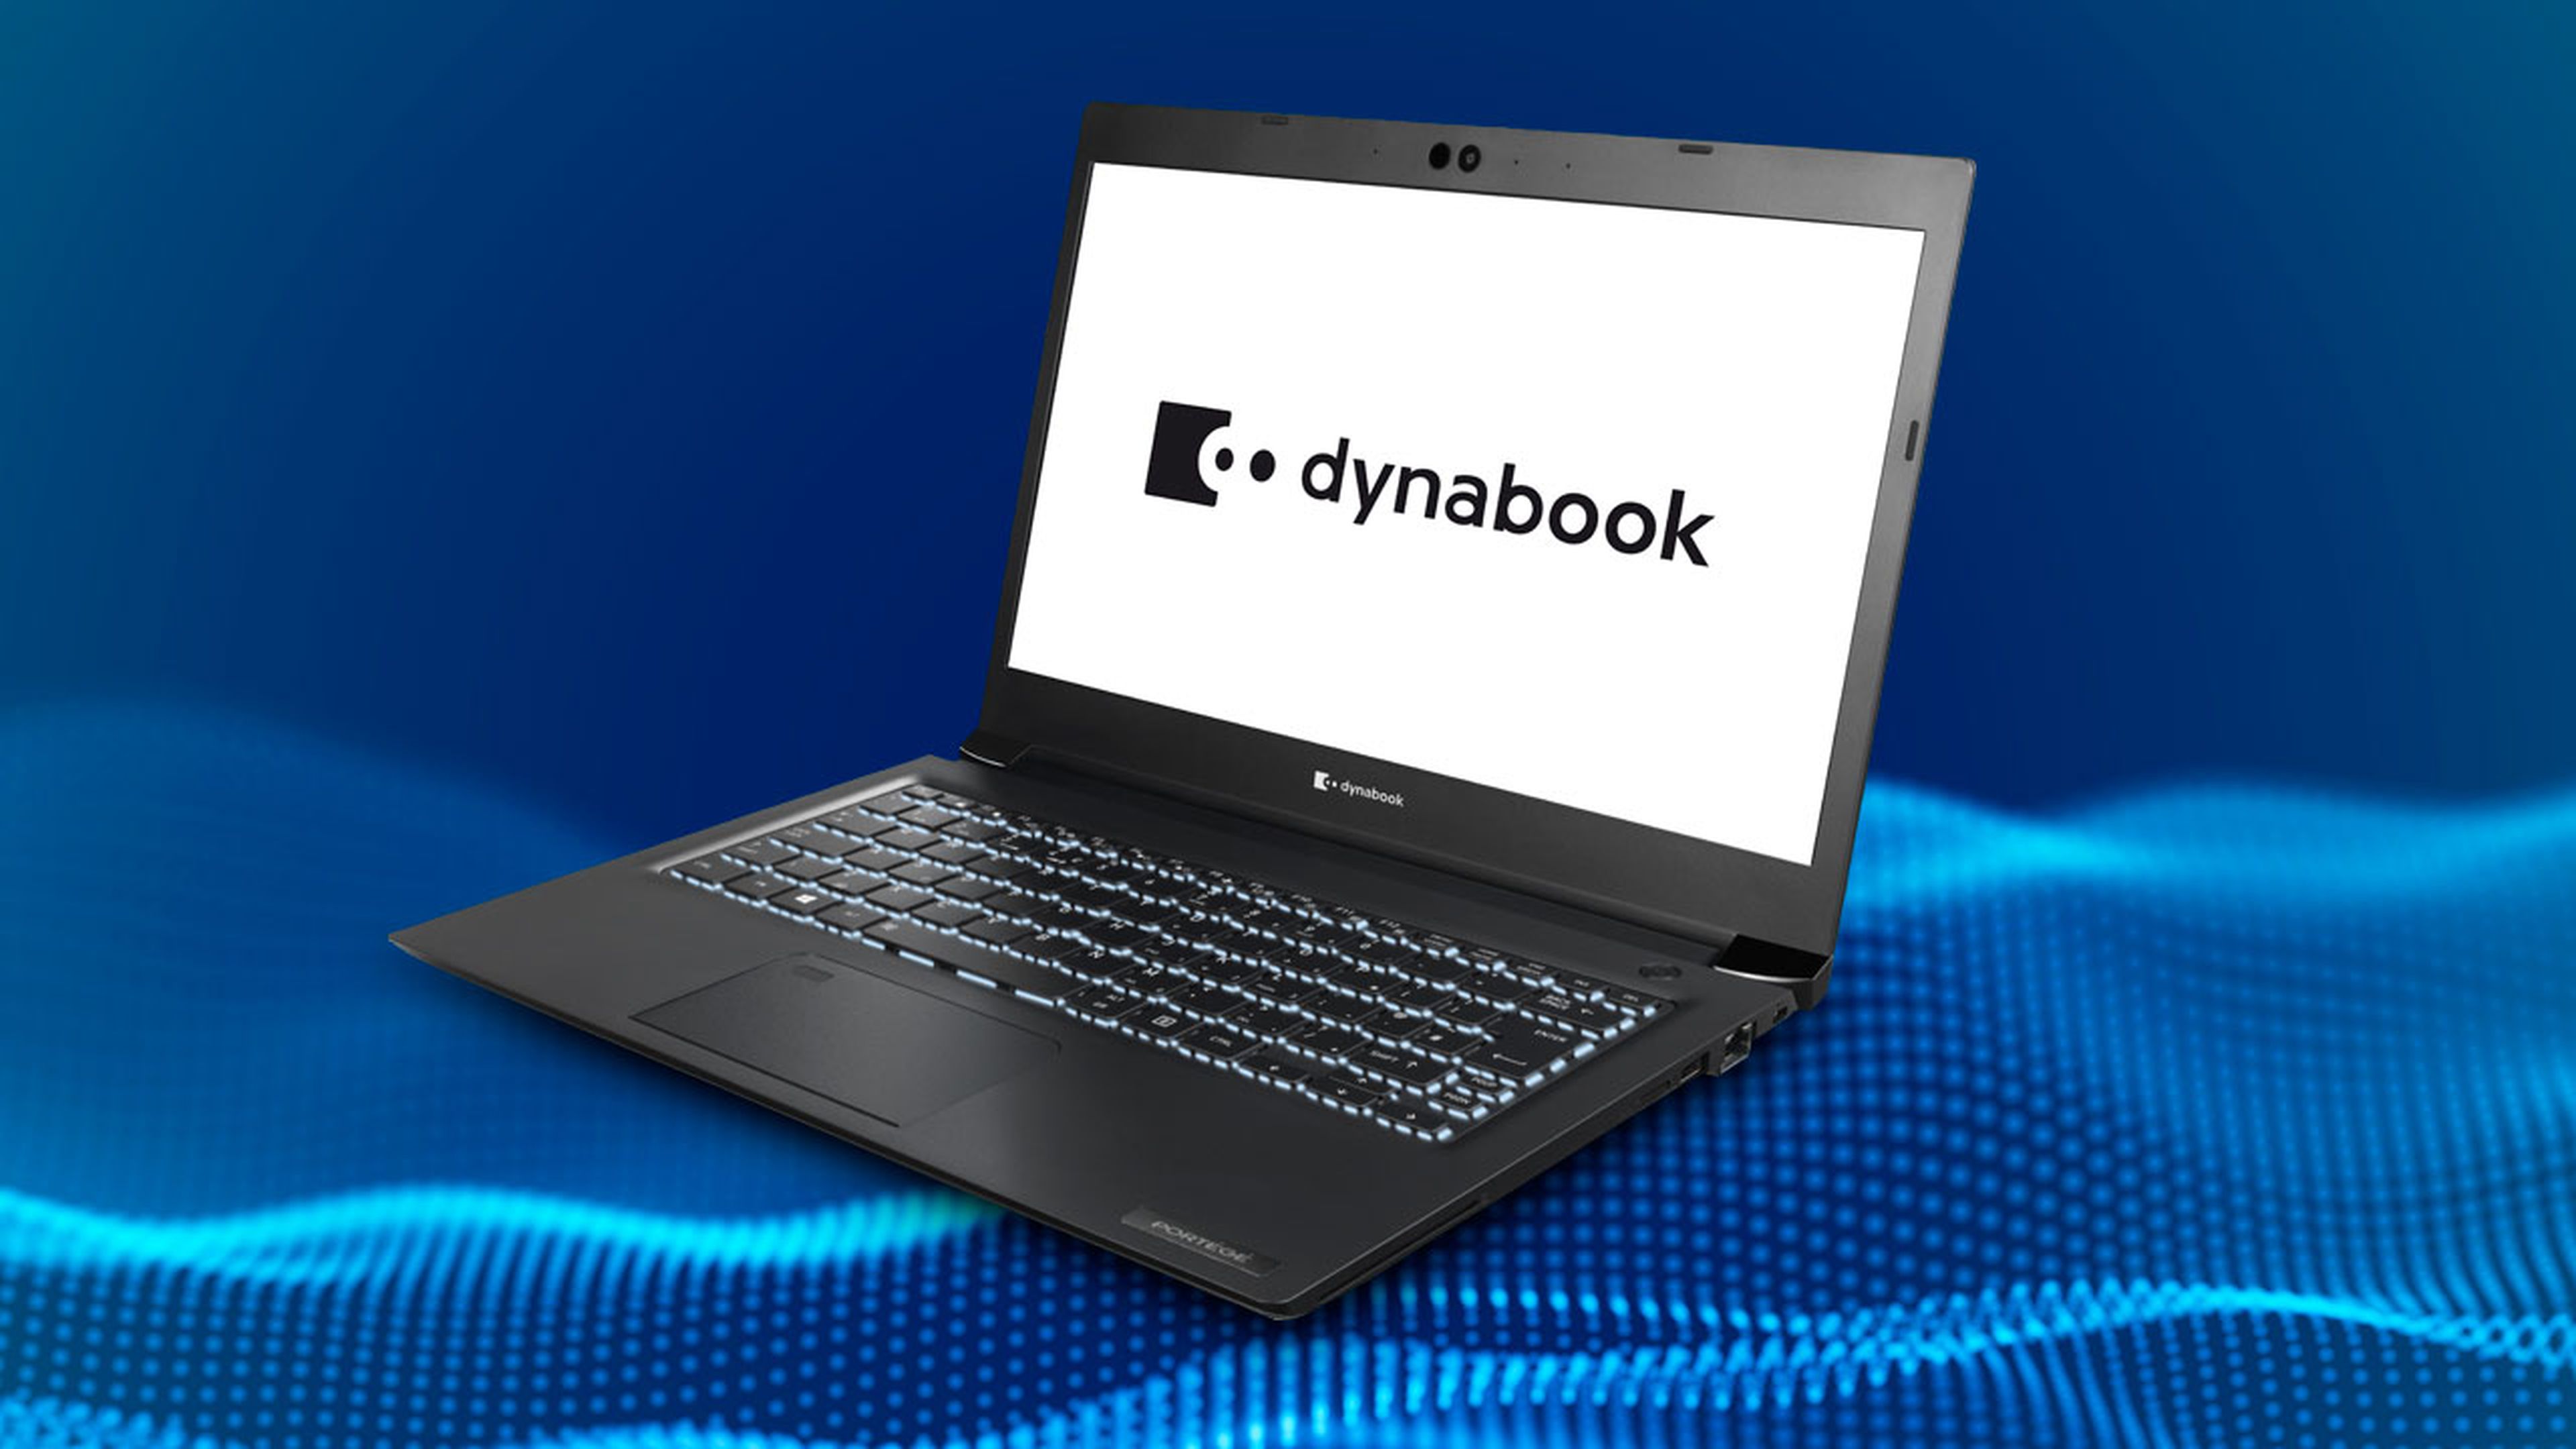 dynabook, nuevo nombre Toshiba